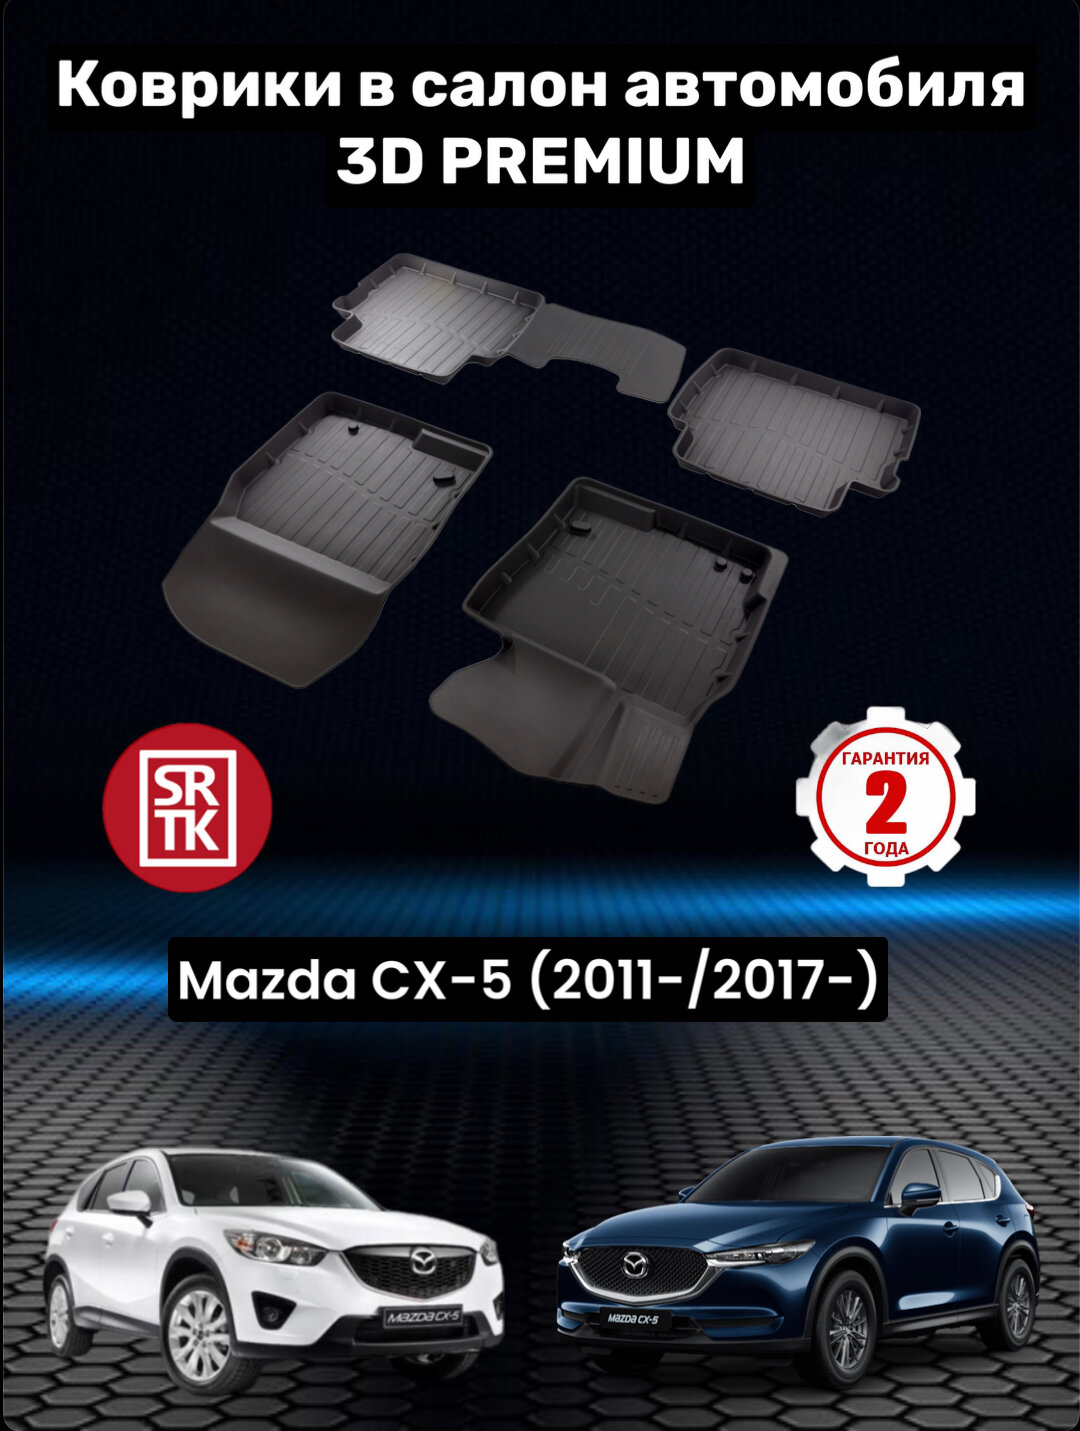 Коврики резиновые в салон для Мазда СХ-5/ Mazda CX-5 (2011-/2017-) 3D PREMIUM SRTK (Саранск) комплект в салон